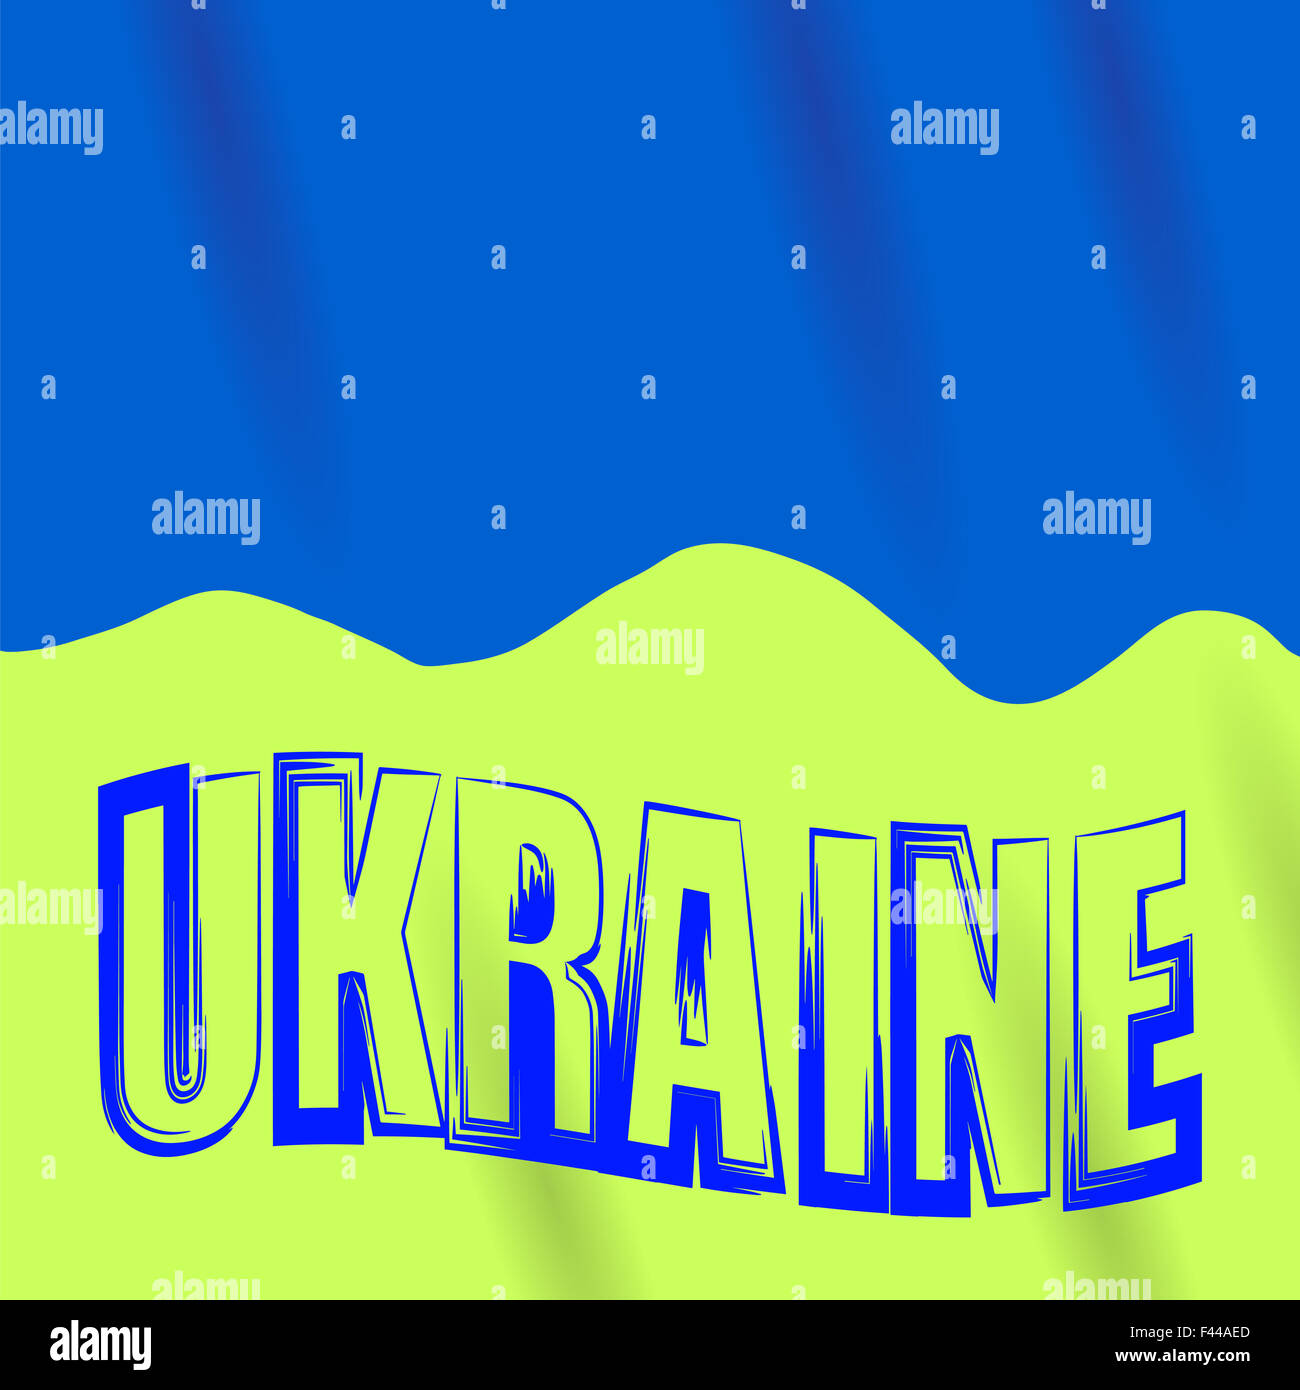 Bandiera dell'ucraina immagini e fotografie stock ad alta risoluzione -  Pagina 3 - Alamy